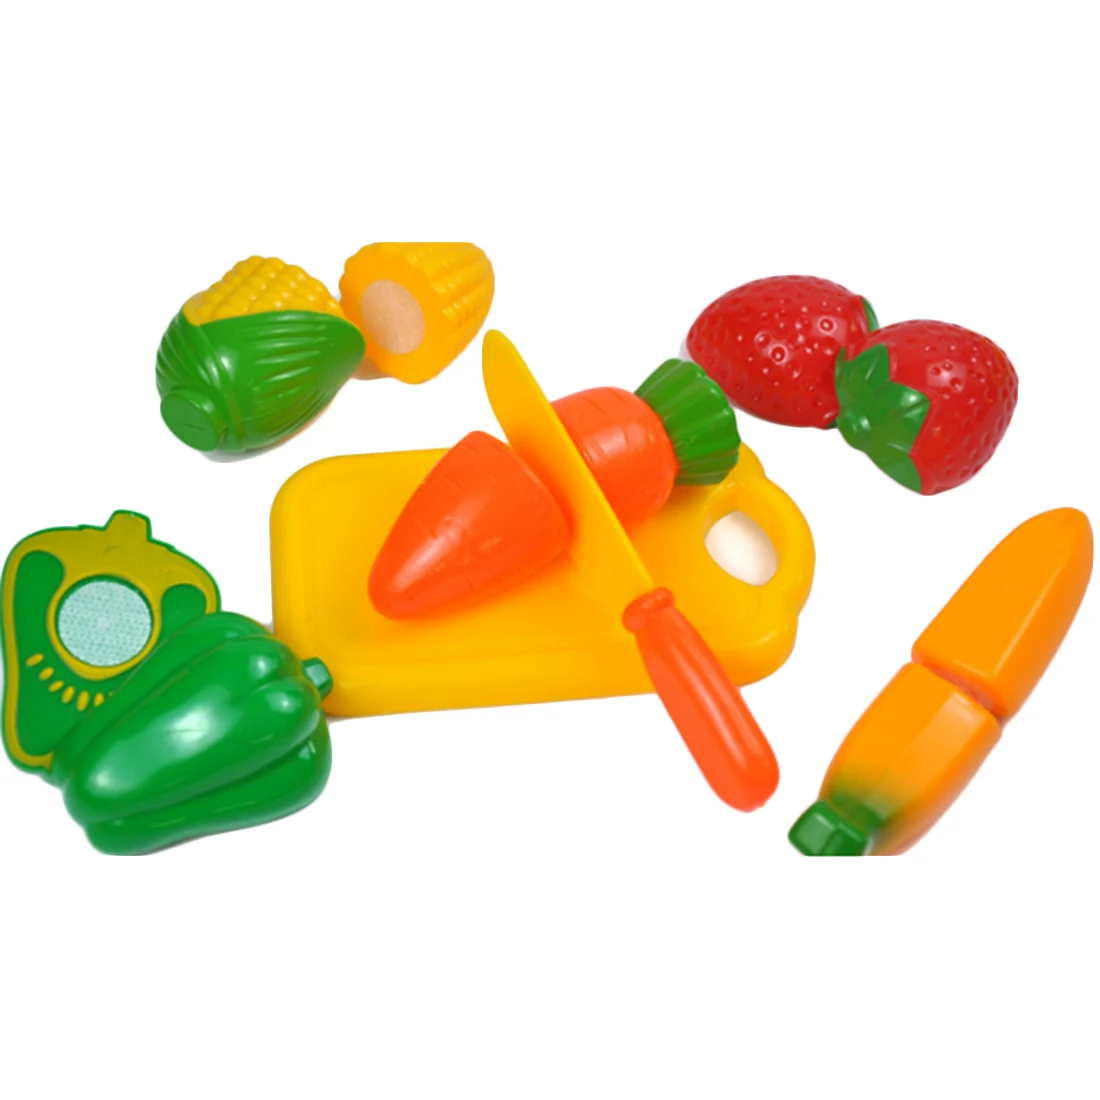 34 шт. Детские ролевые игры кухонные режущие игрушки набор для домашнего обучения Обучающие Развивающие игрушки для детей игровой дом игрушки подарки